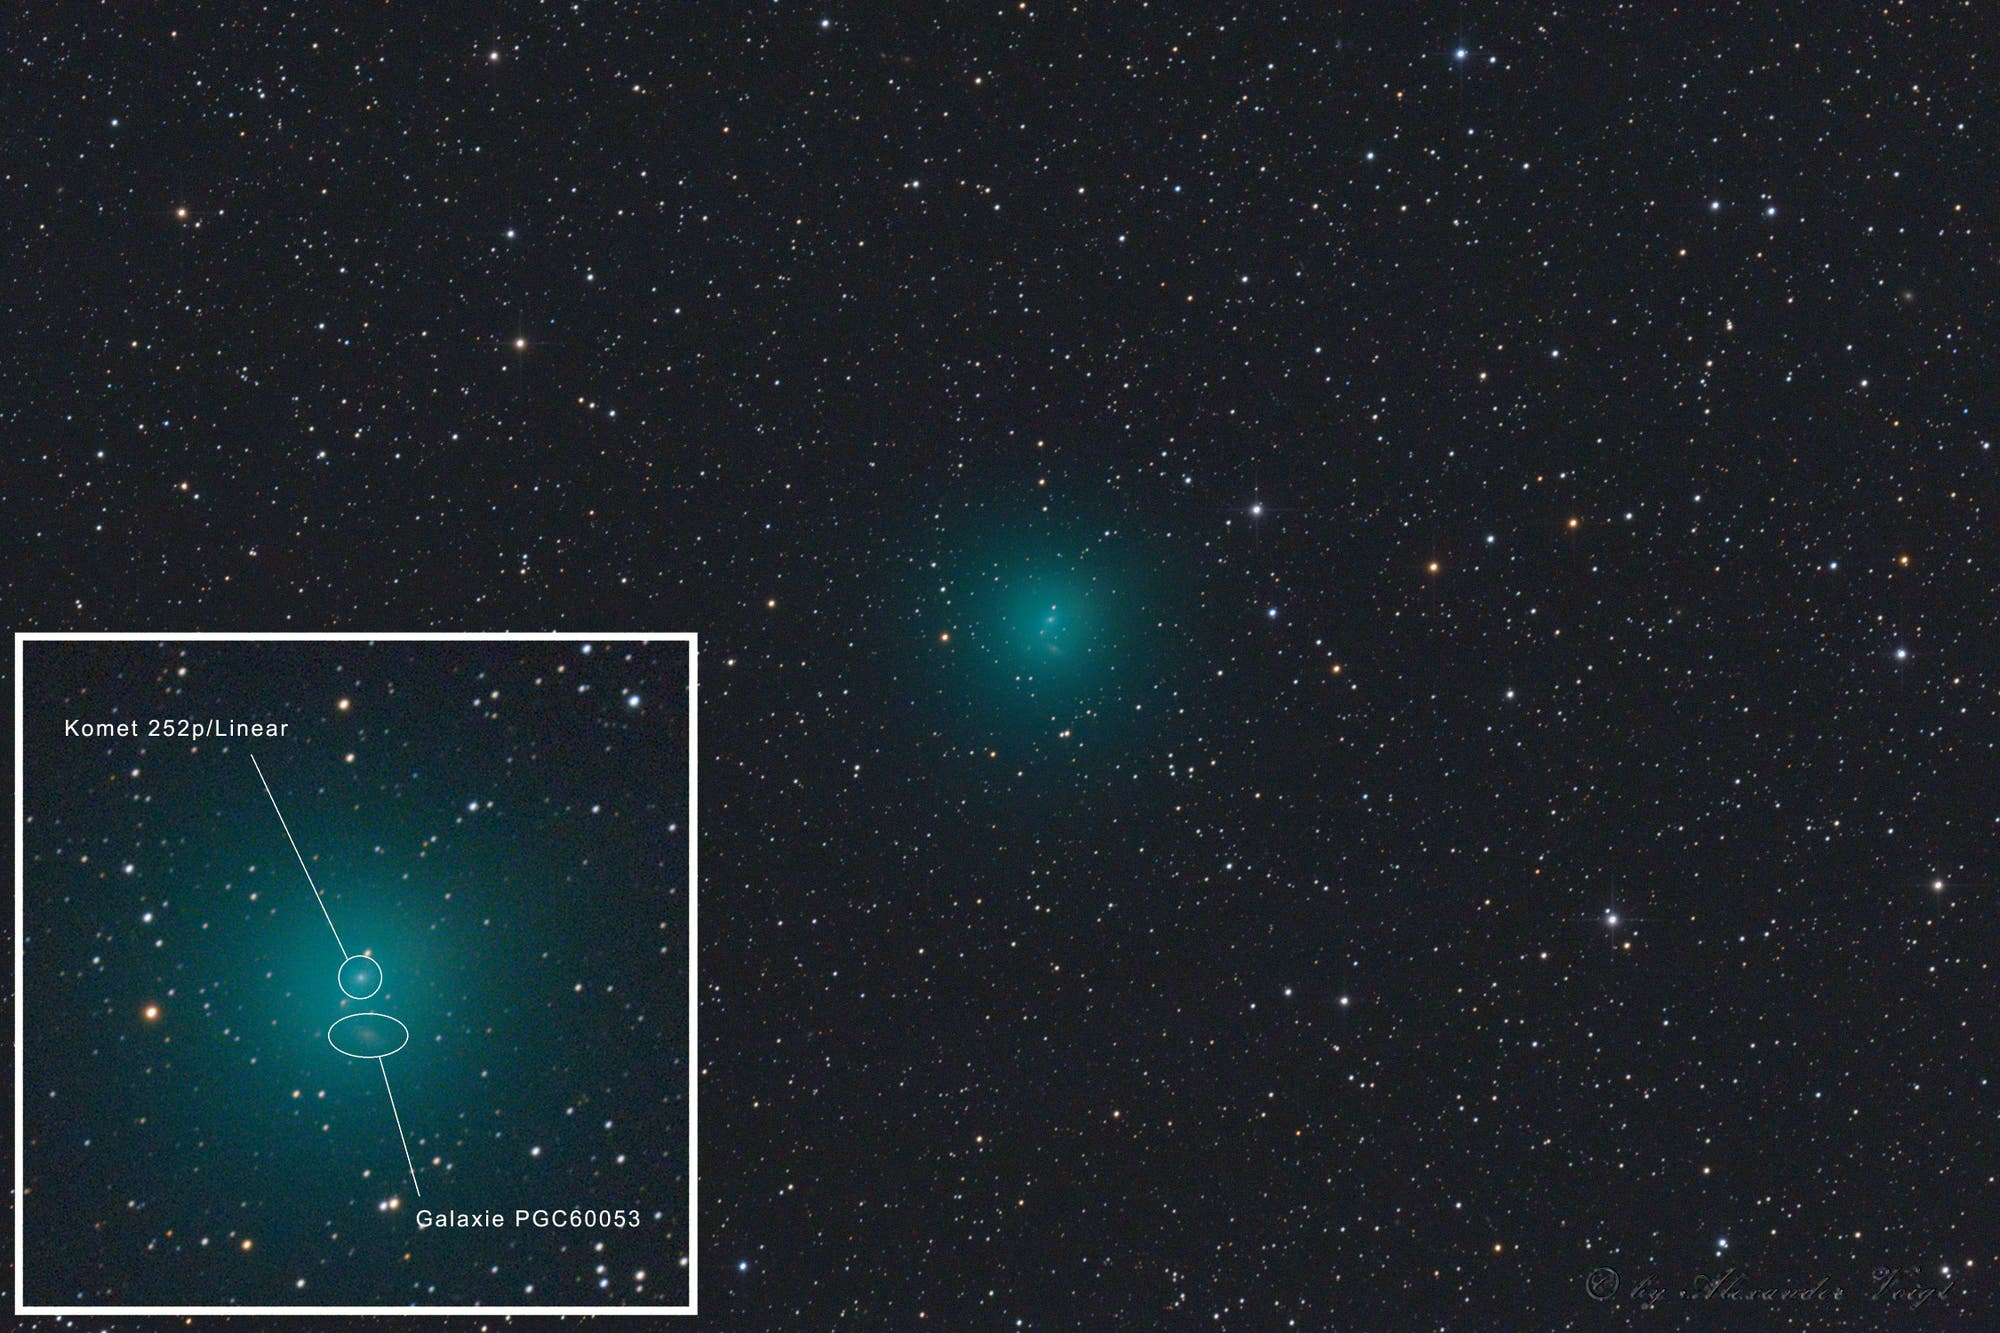 Komet 252P/Linear und die Balkengalaxie mit PGC 60053